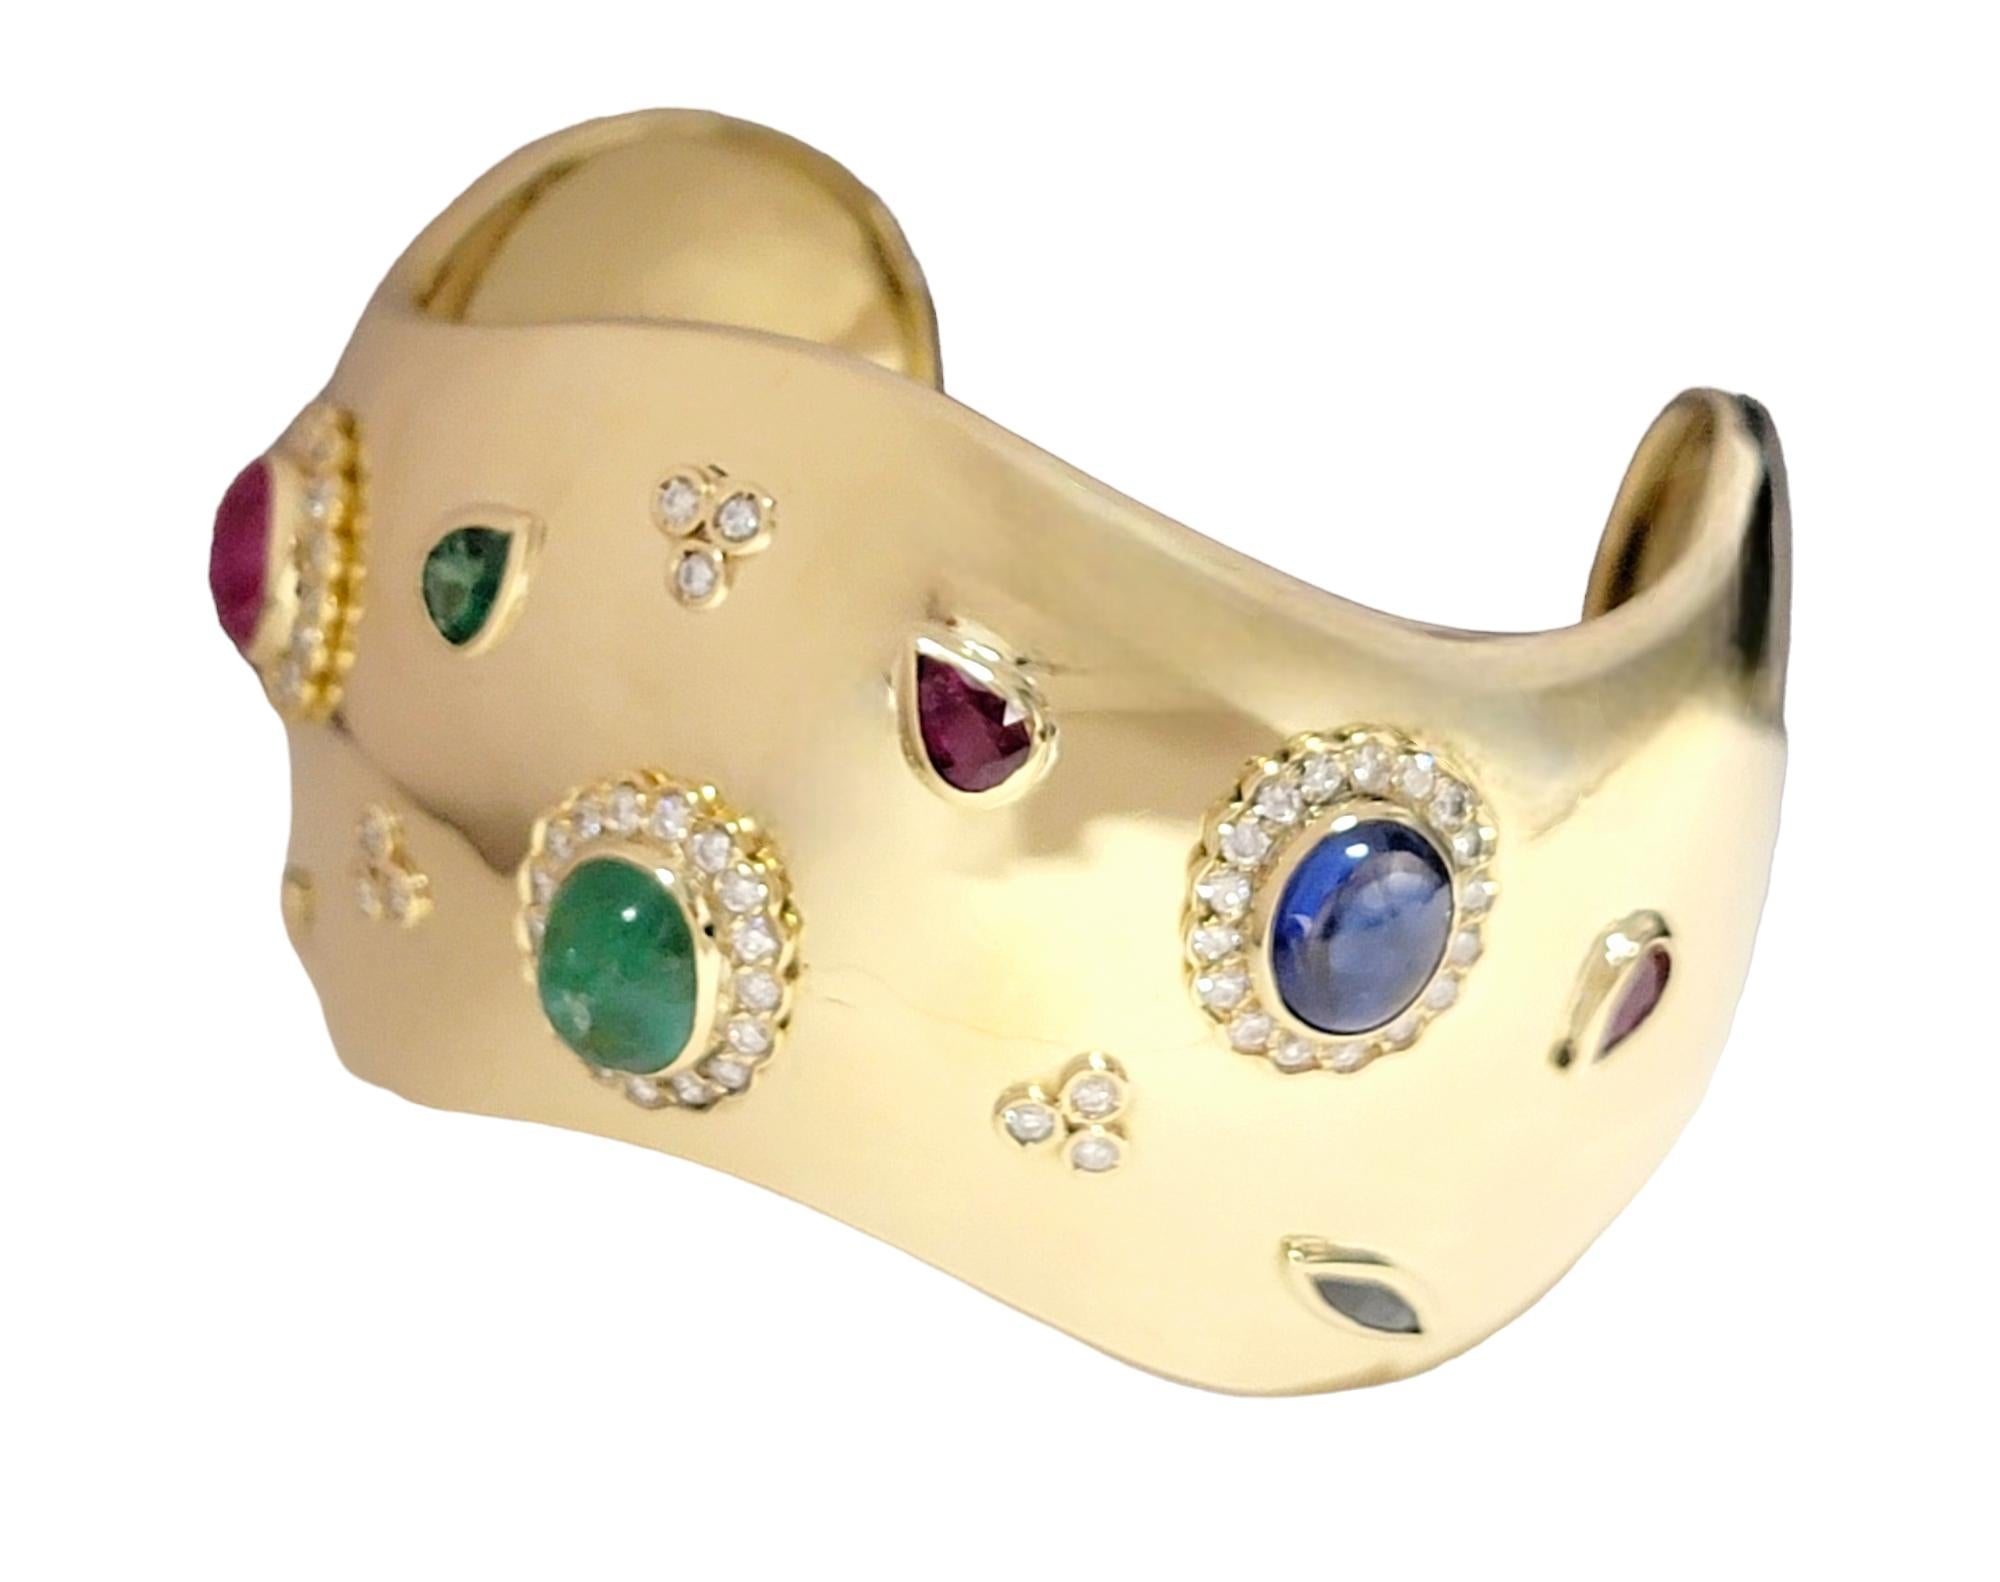 Cet extraordinaire bracelet manchette en or est l'incarnation de l'élégance, serti d'or jaune 18 carats resplendissant. Véritable toile de luxe, le bracelet est orné d'un éventail éblouissant de pierres précieuses - diamants, rubis, saphirs et